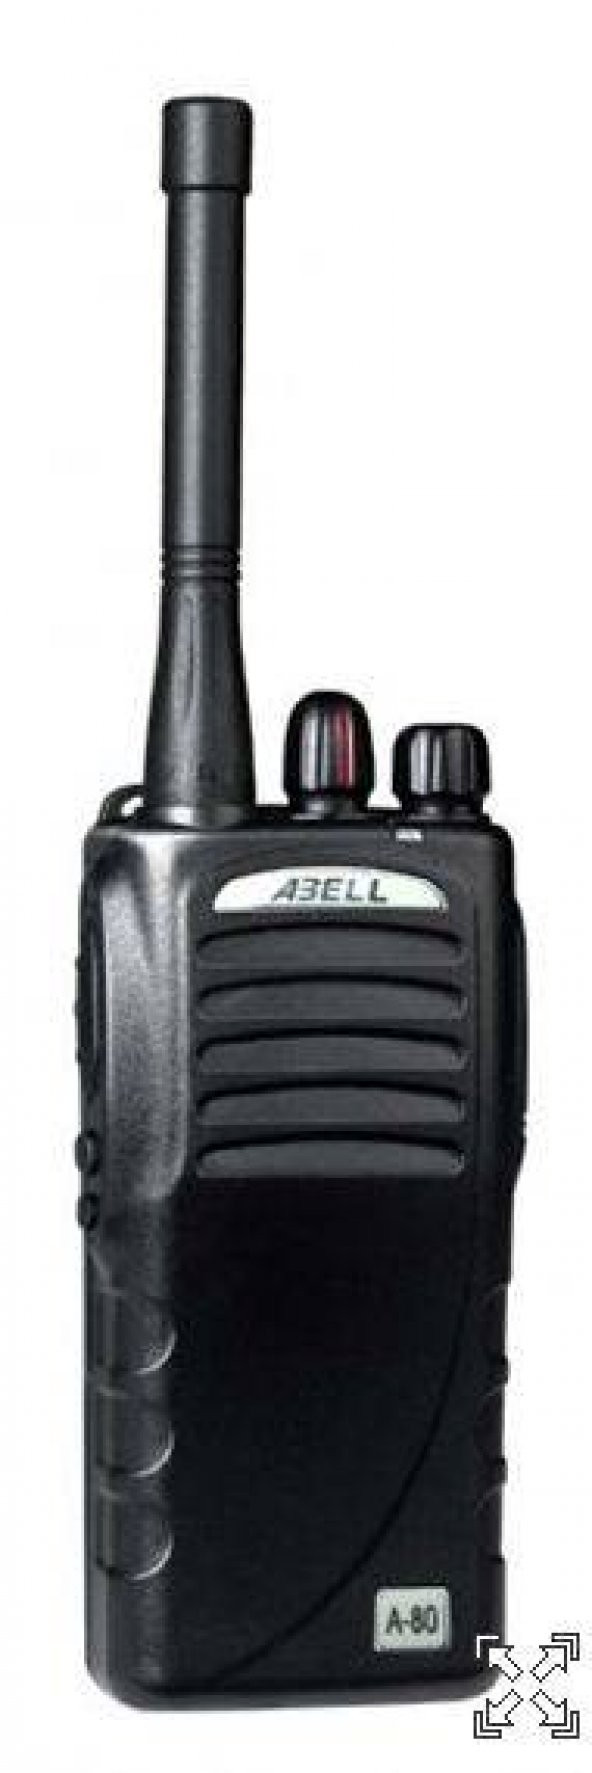 Abell FreeTalk Lisanssız PMR Telsiz 446 MHz